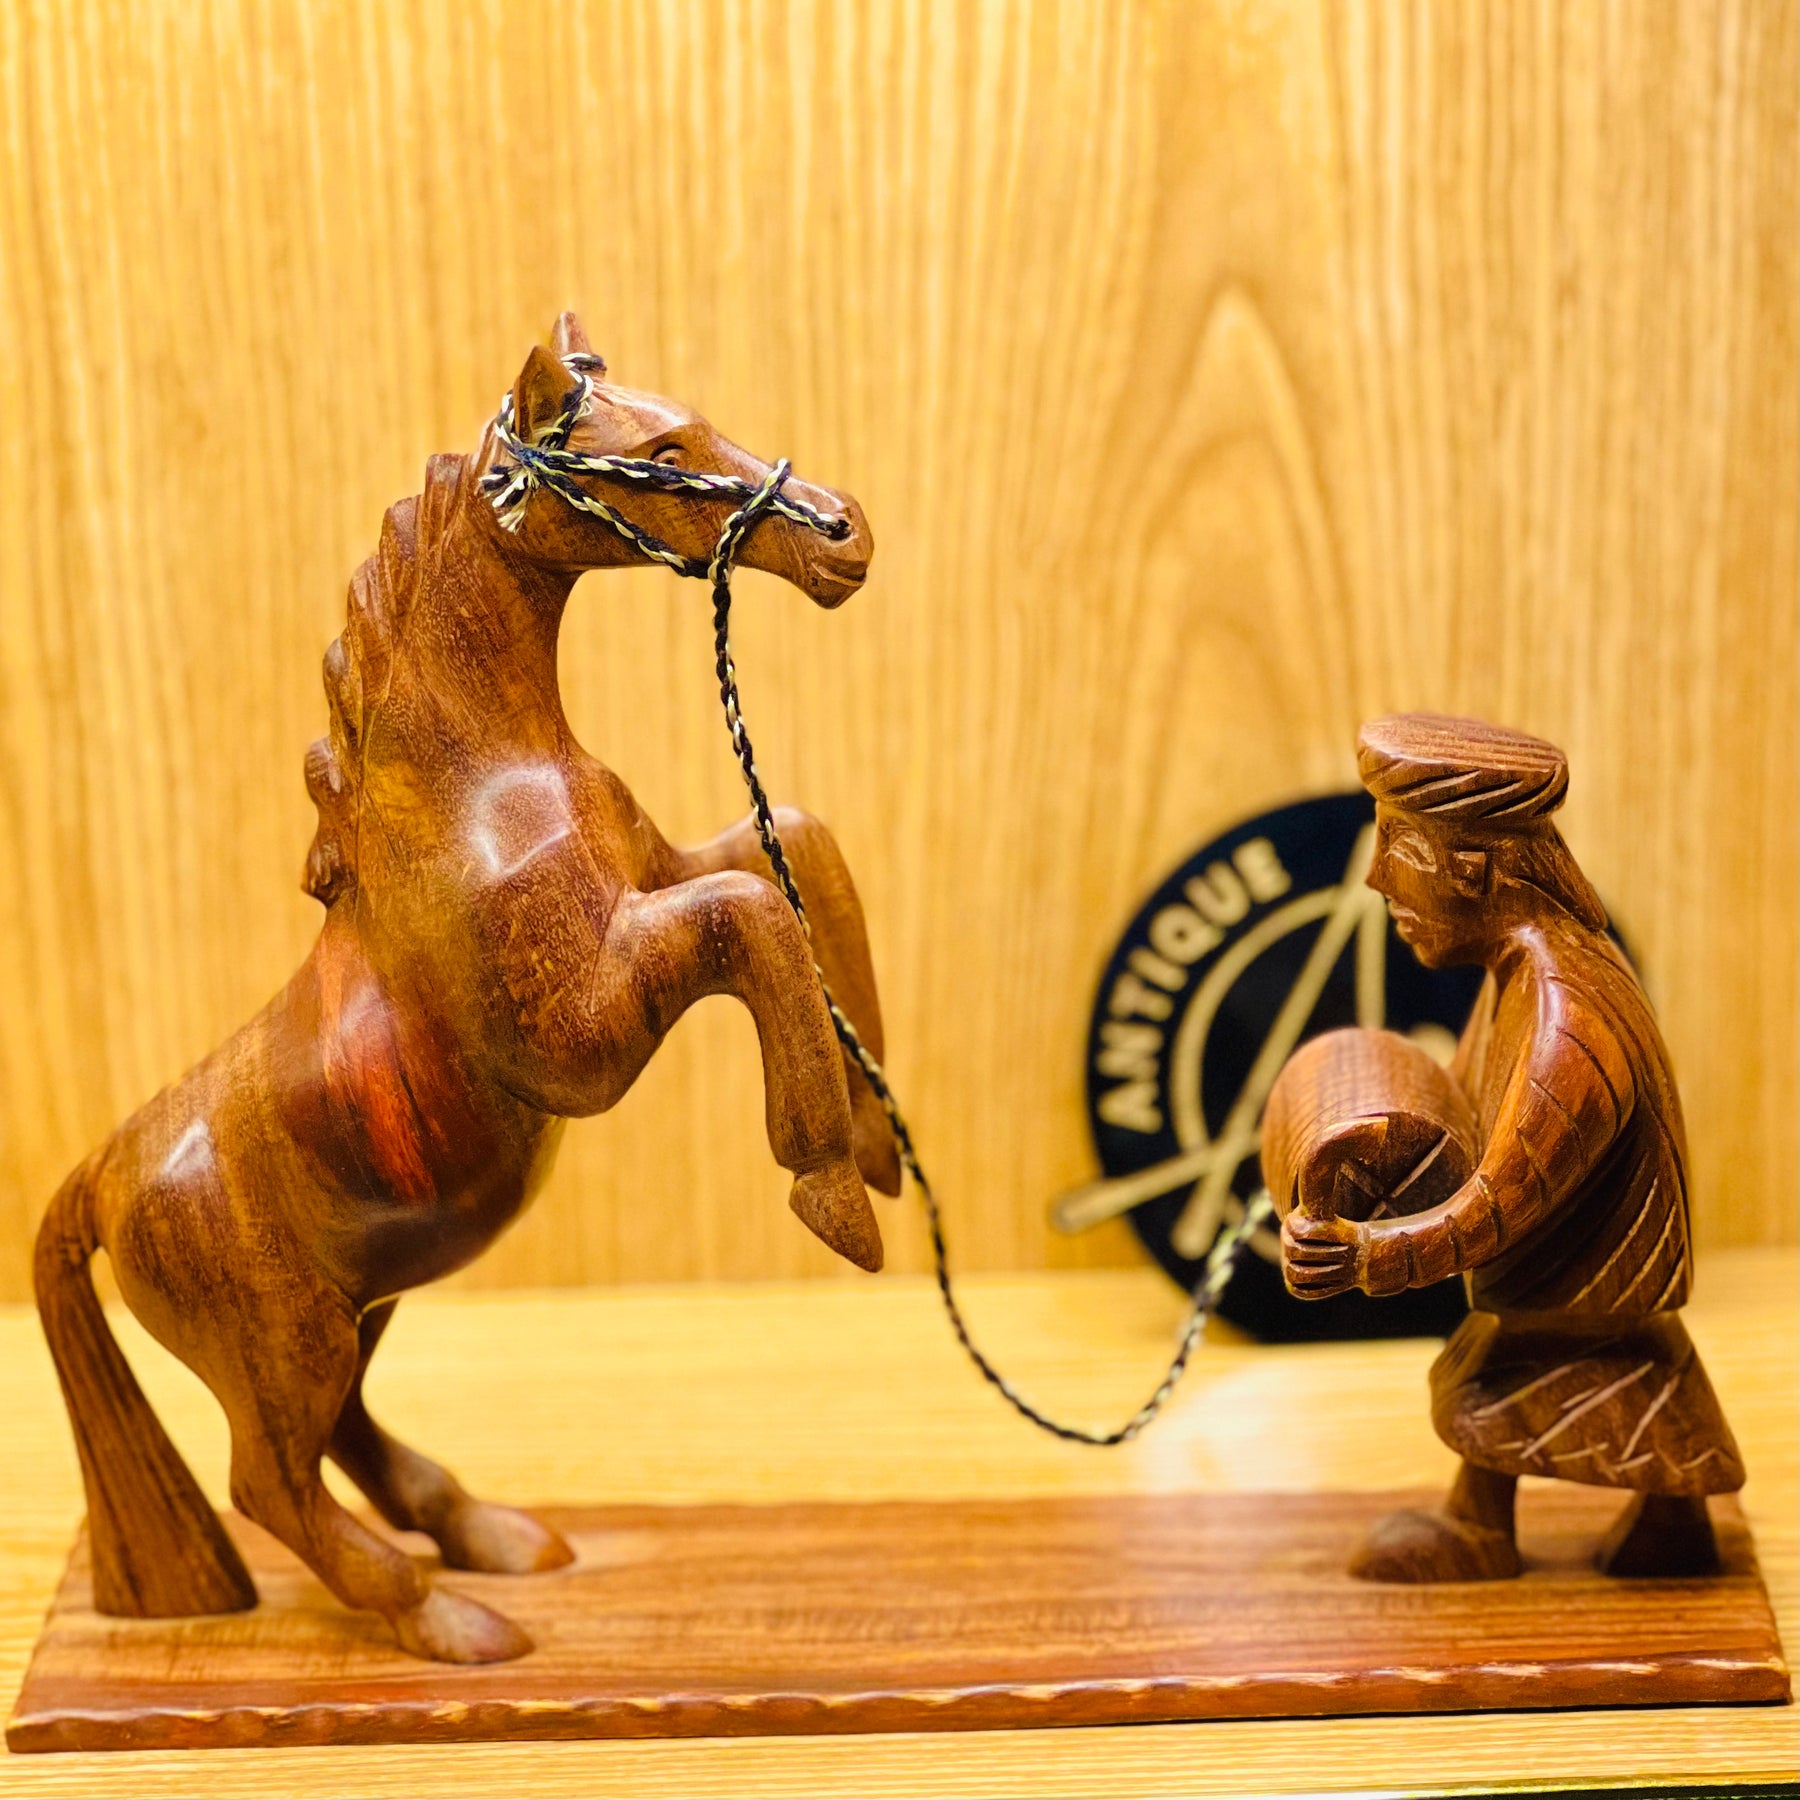 Wooden Horse & Man Culture Set